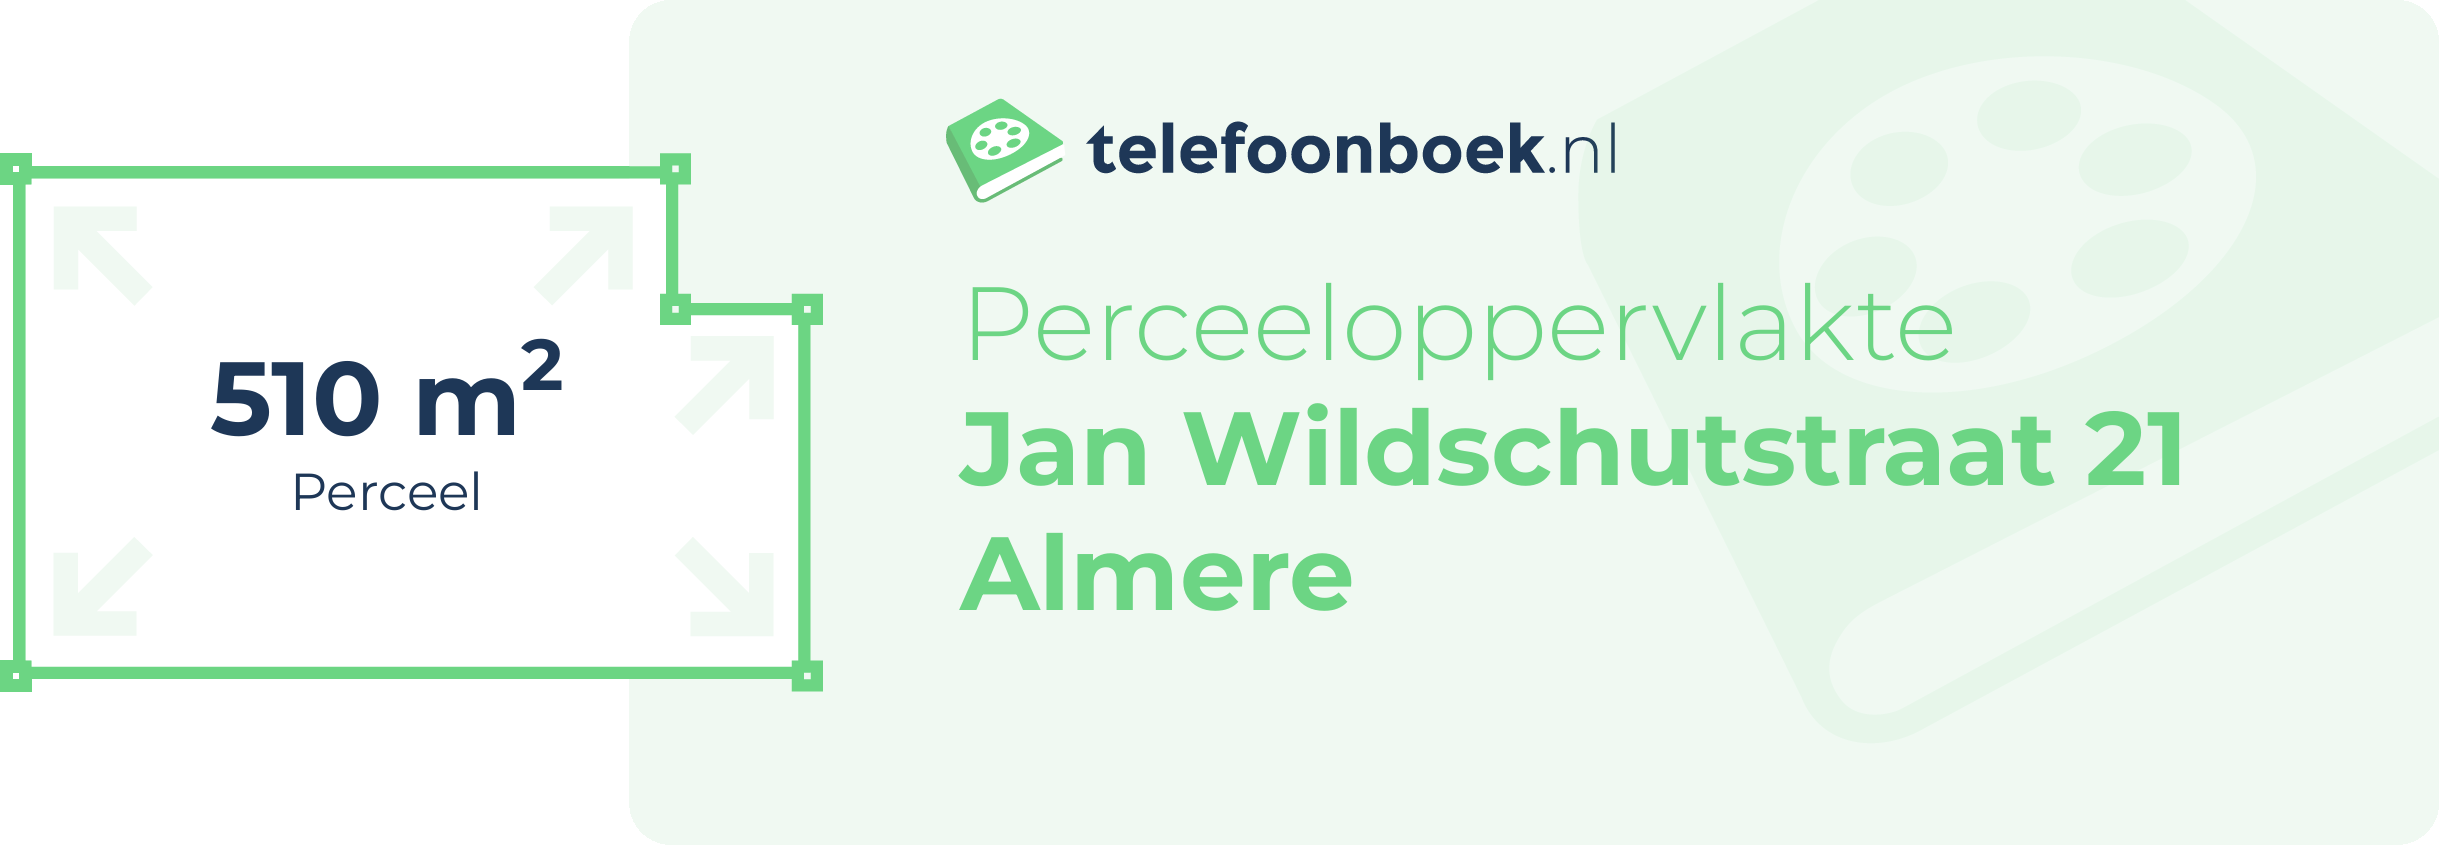 Perceeloppervlakte Jan Wildschutstraat 21 Almere